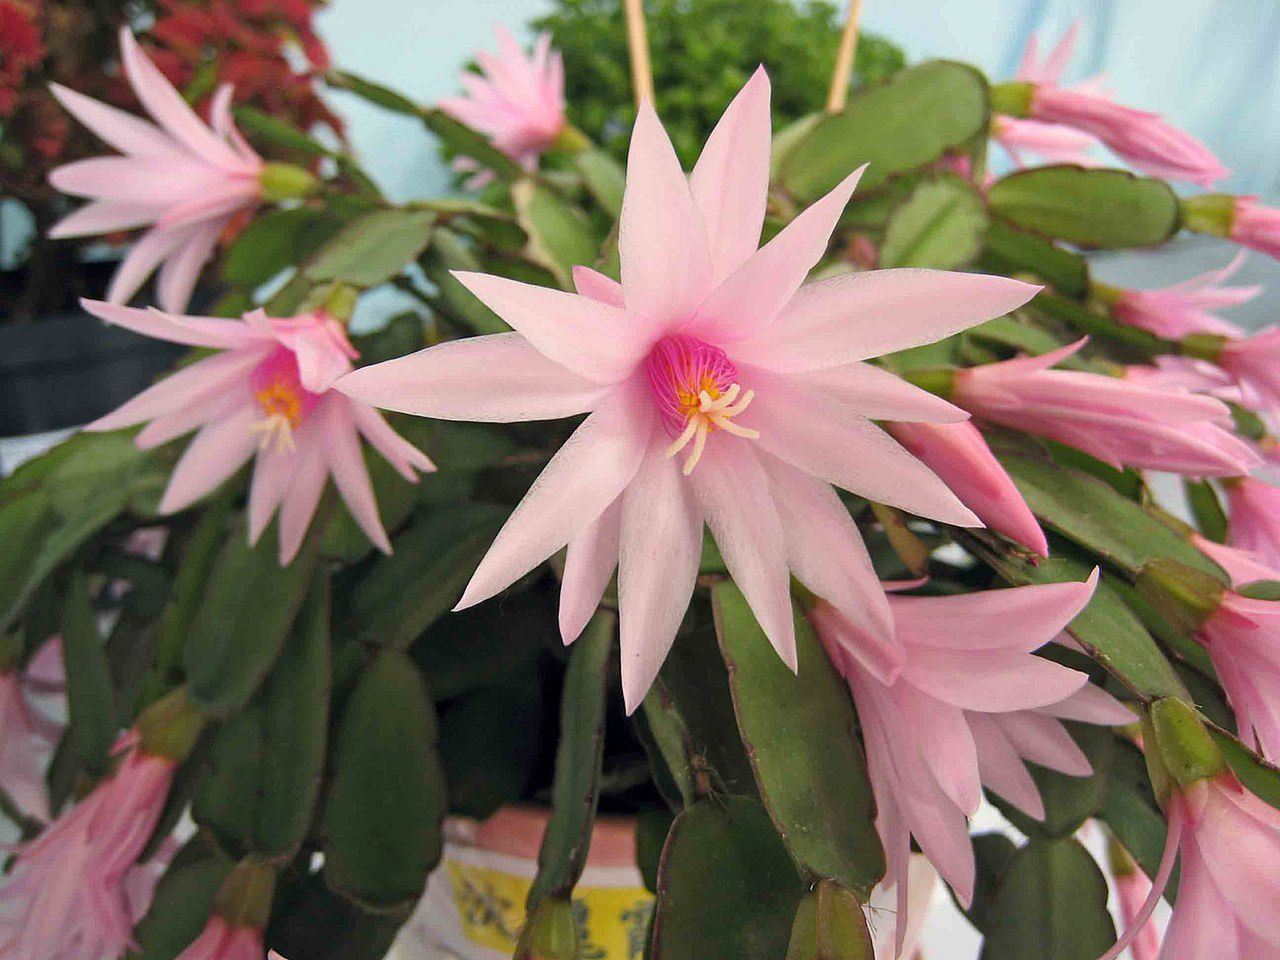 dlaczego kaktus wielkanocny nie kwitnie, fot. wikimediacommons